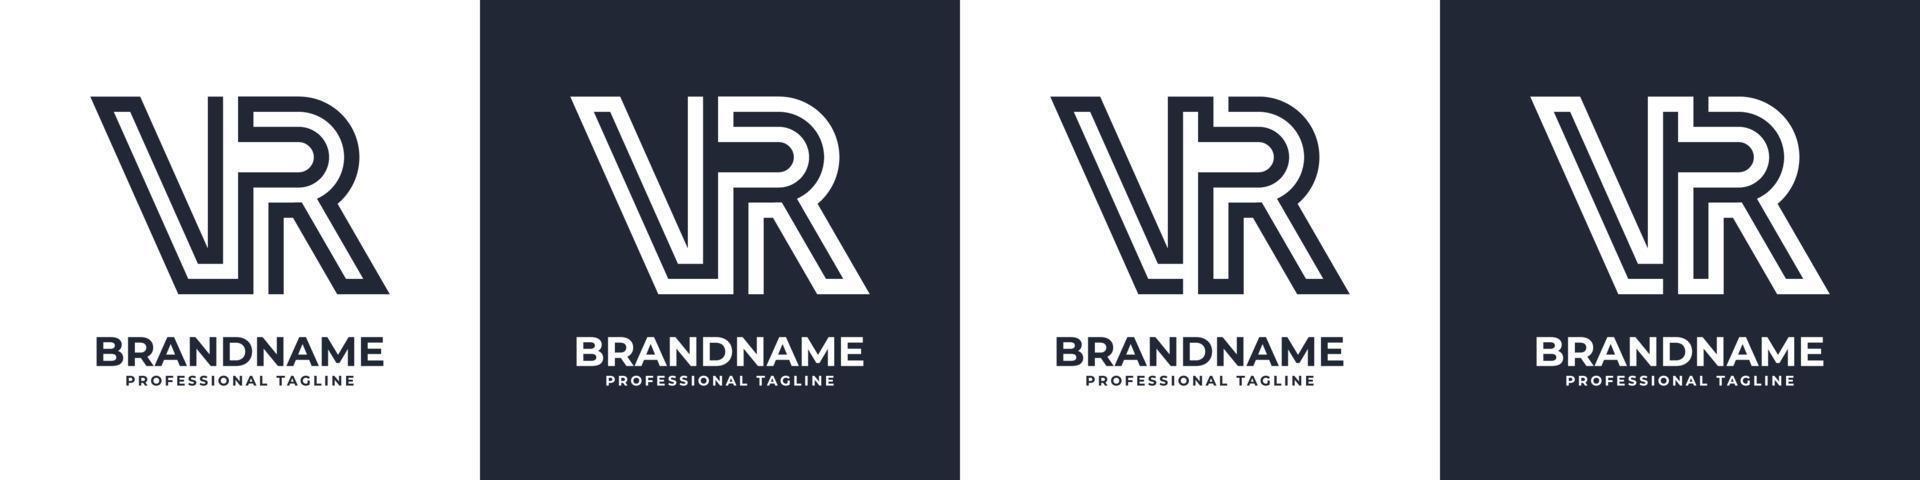 semplice vr monogramma logo, adatto per qualunque attività commerciale con vr o rv iniziale. vettore